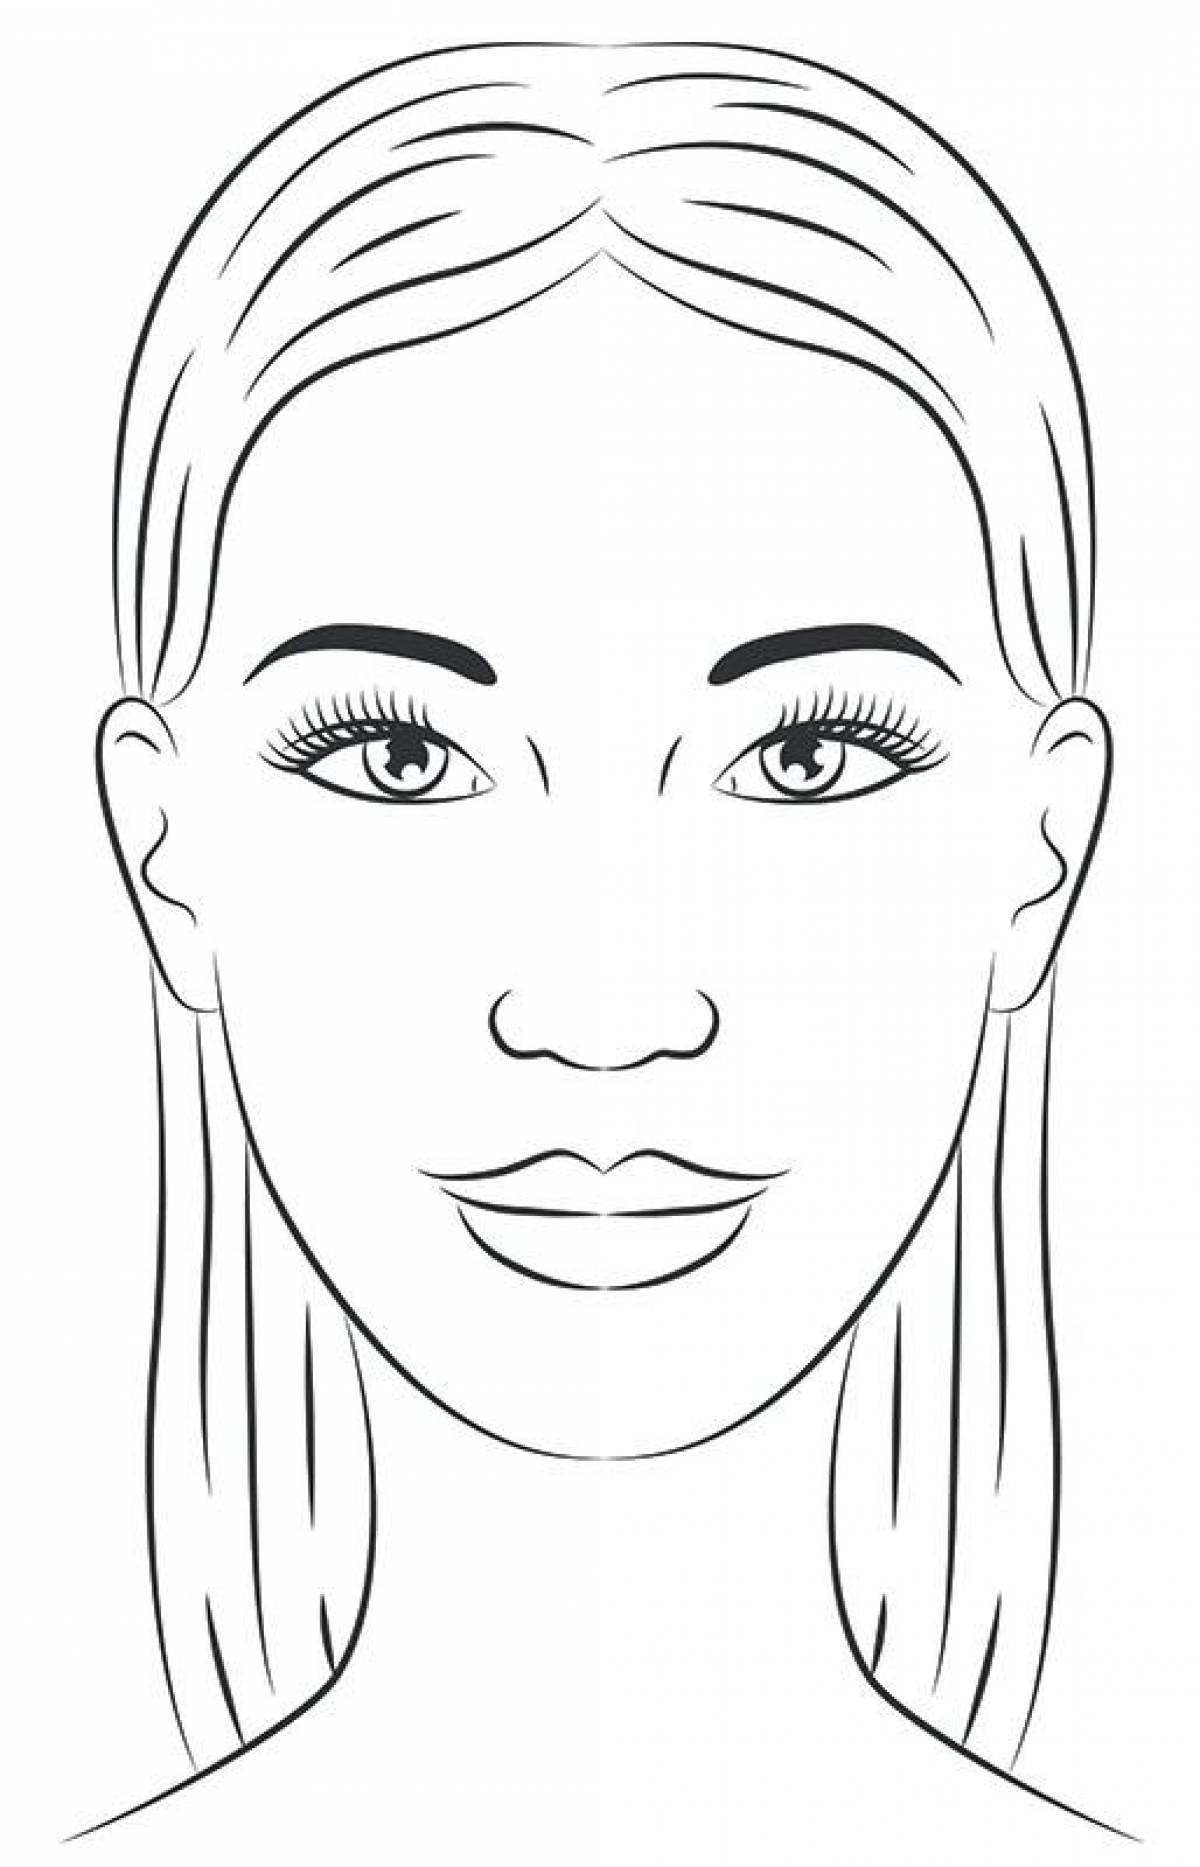 Radiant coloring page макияж для лица для девочек